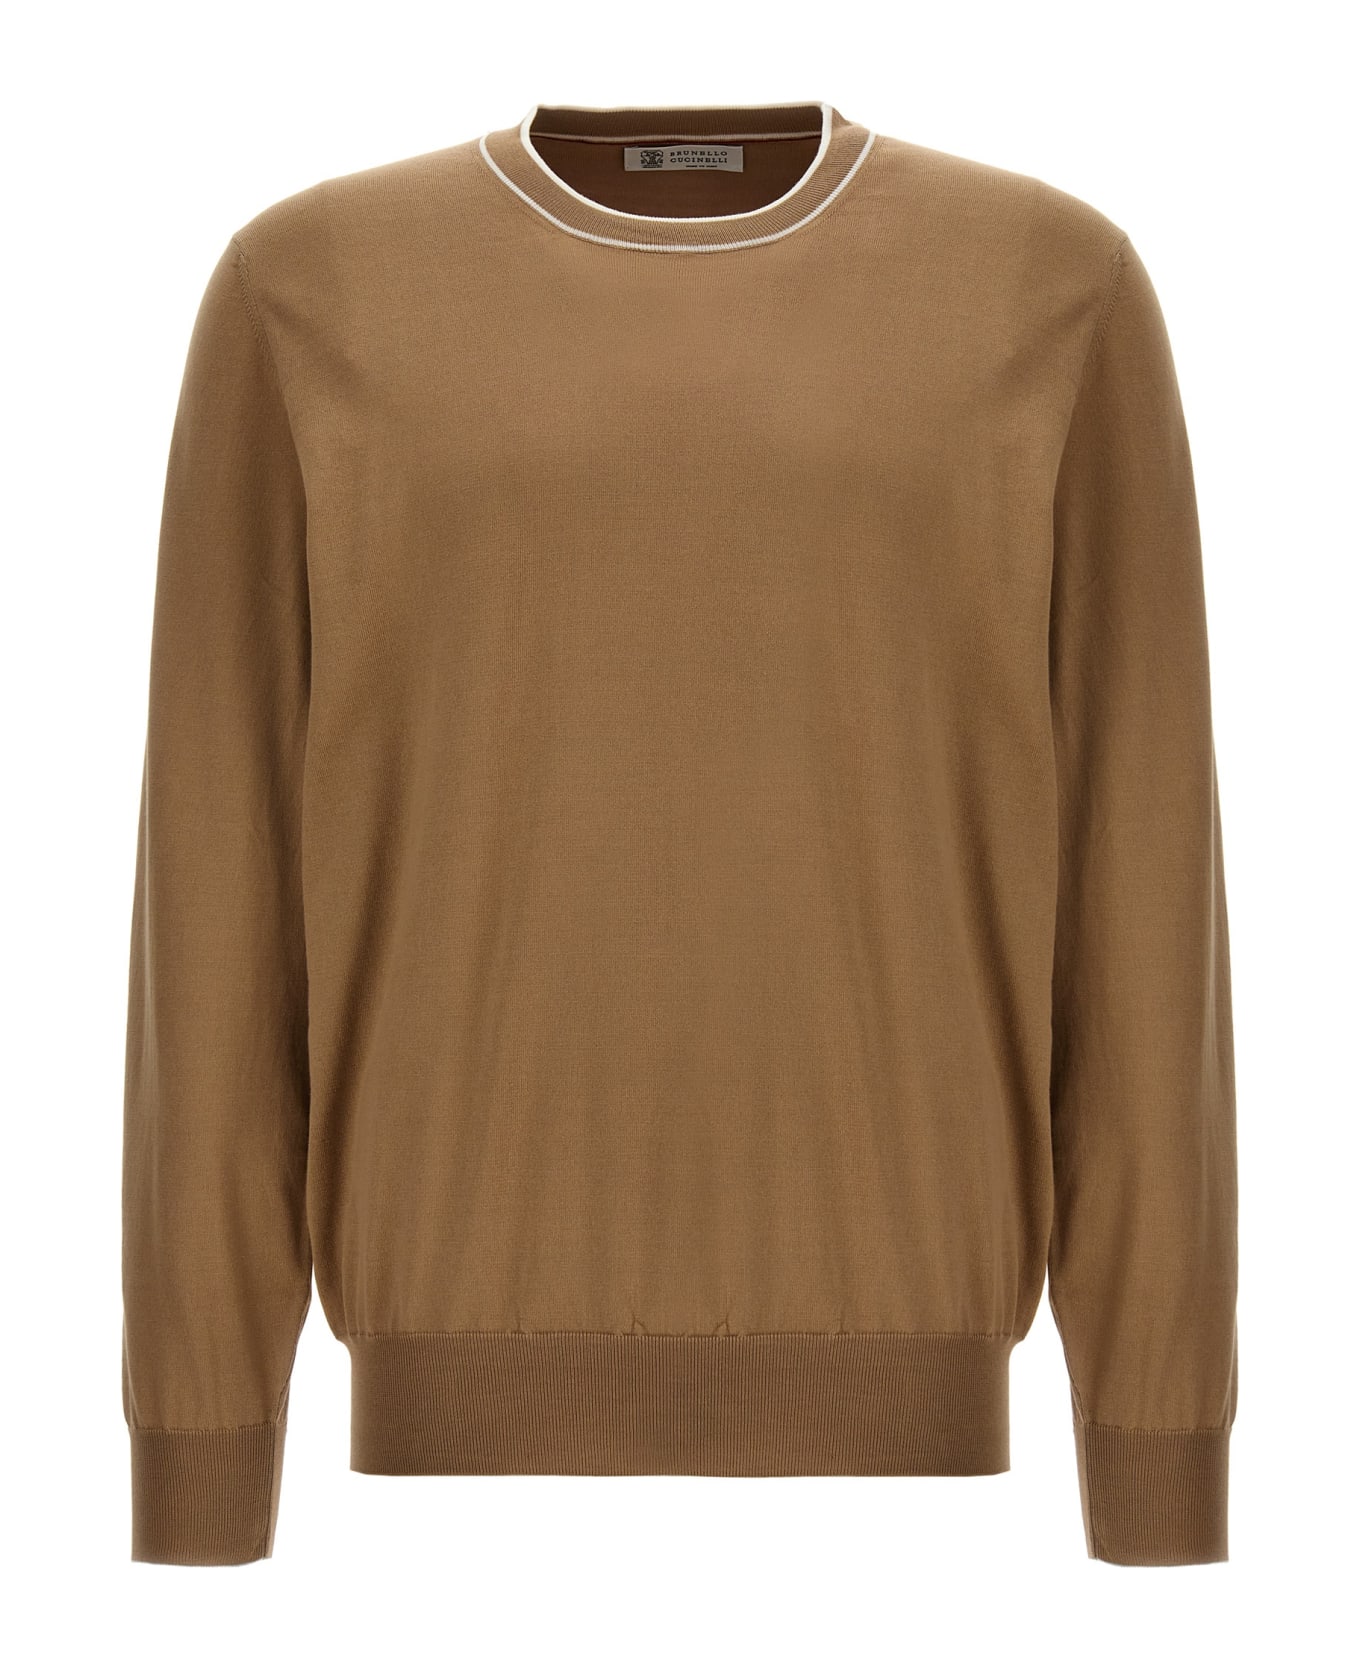 Brunello Cucinelli Cotton Sweater - Beige